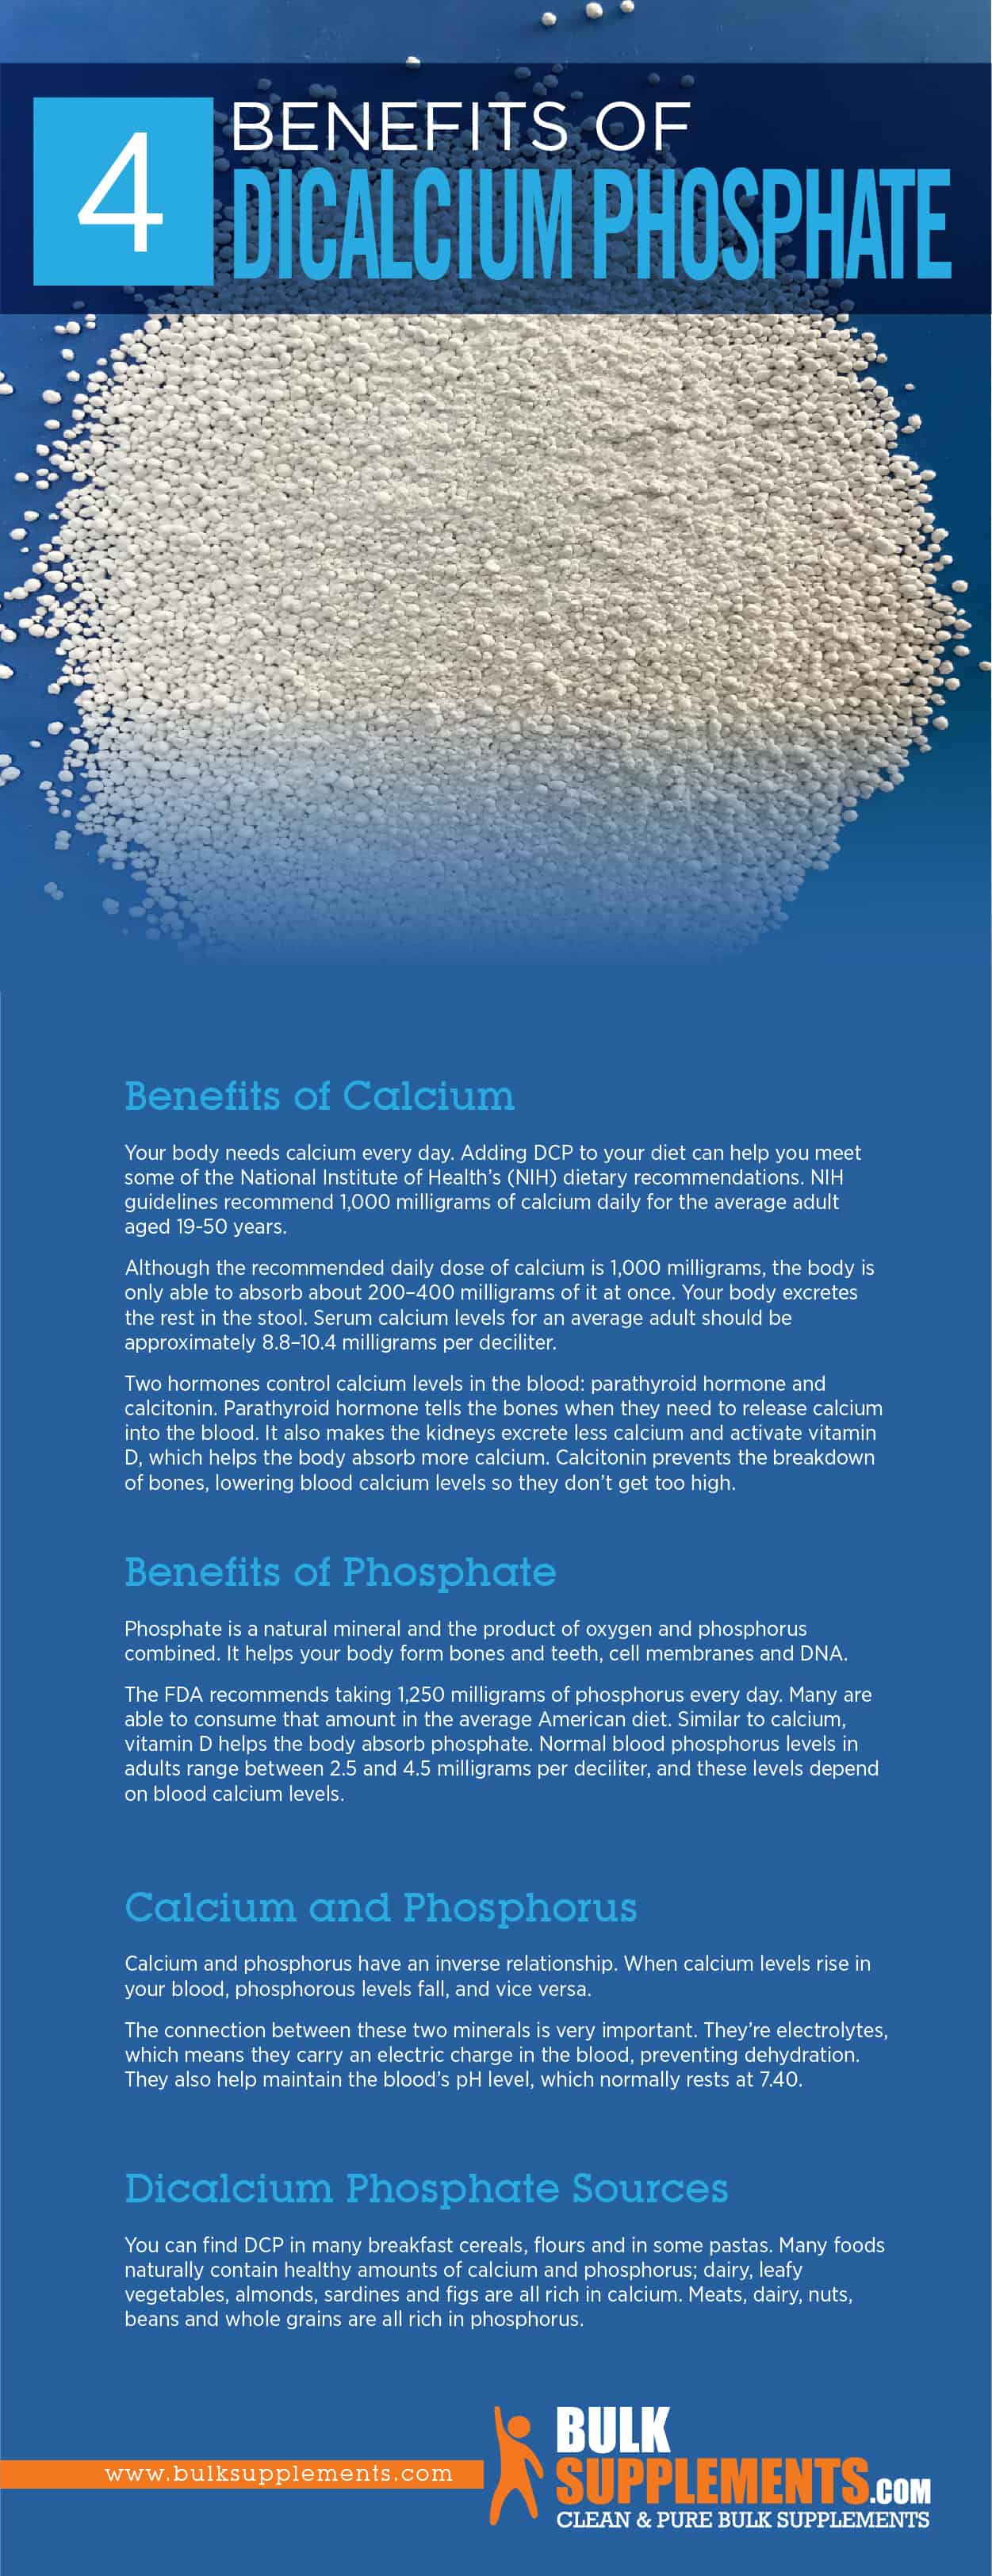 Dicalcium Phosphate Benefits